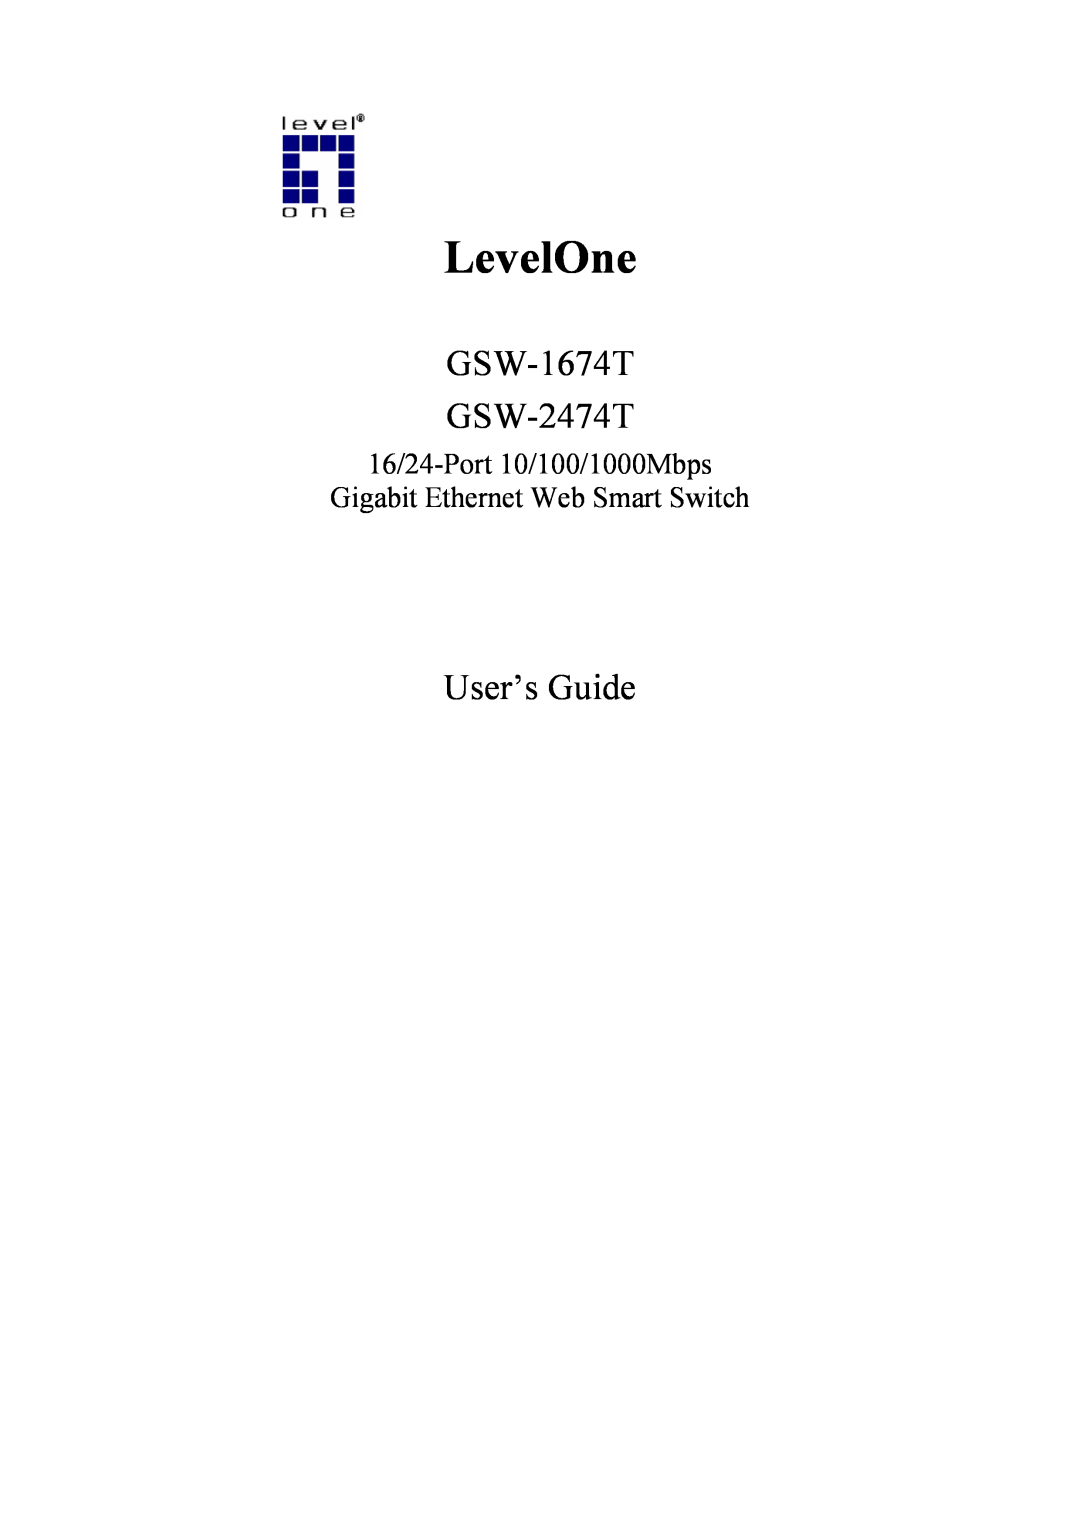 LevelOne manual LevelOne, GSW-1674T GSW-2474T, User’s Guide 